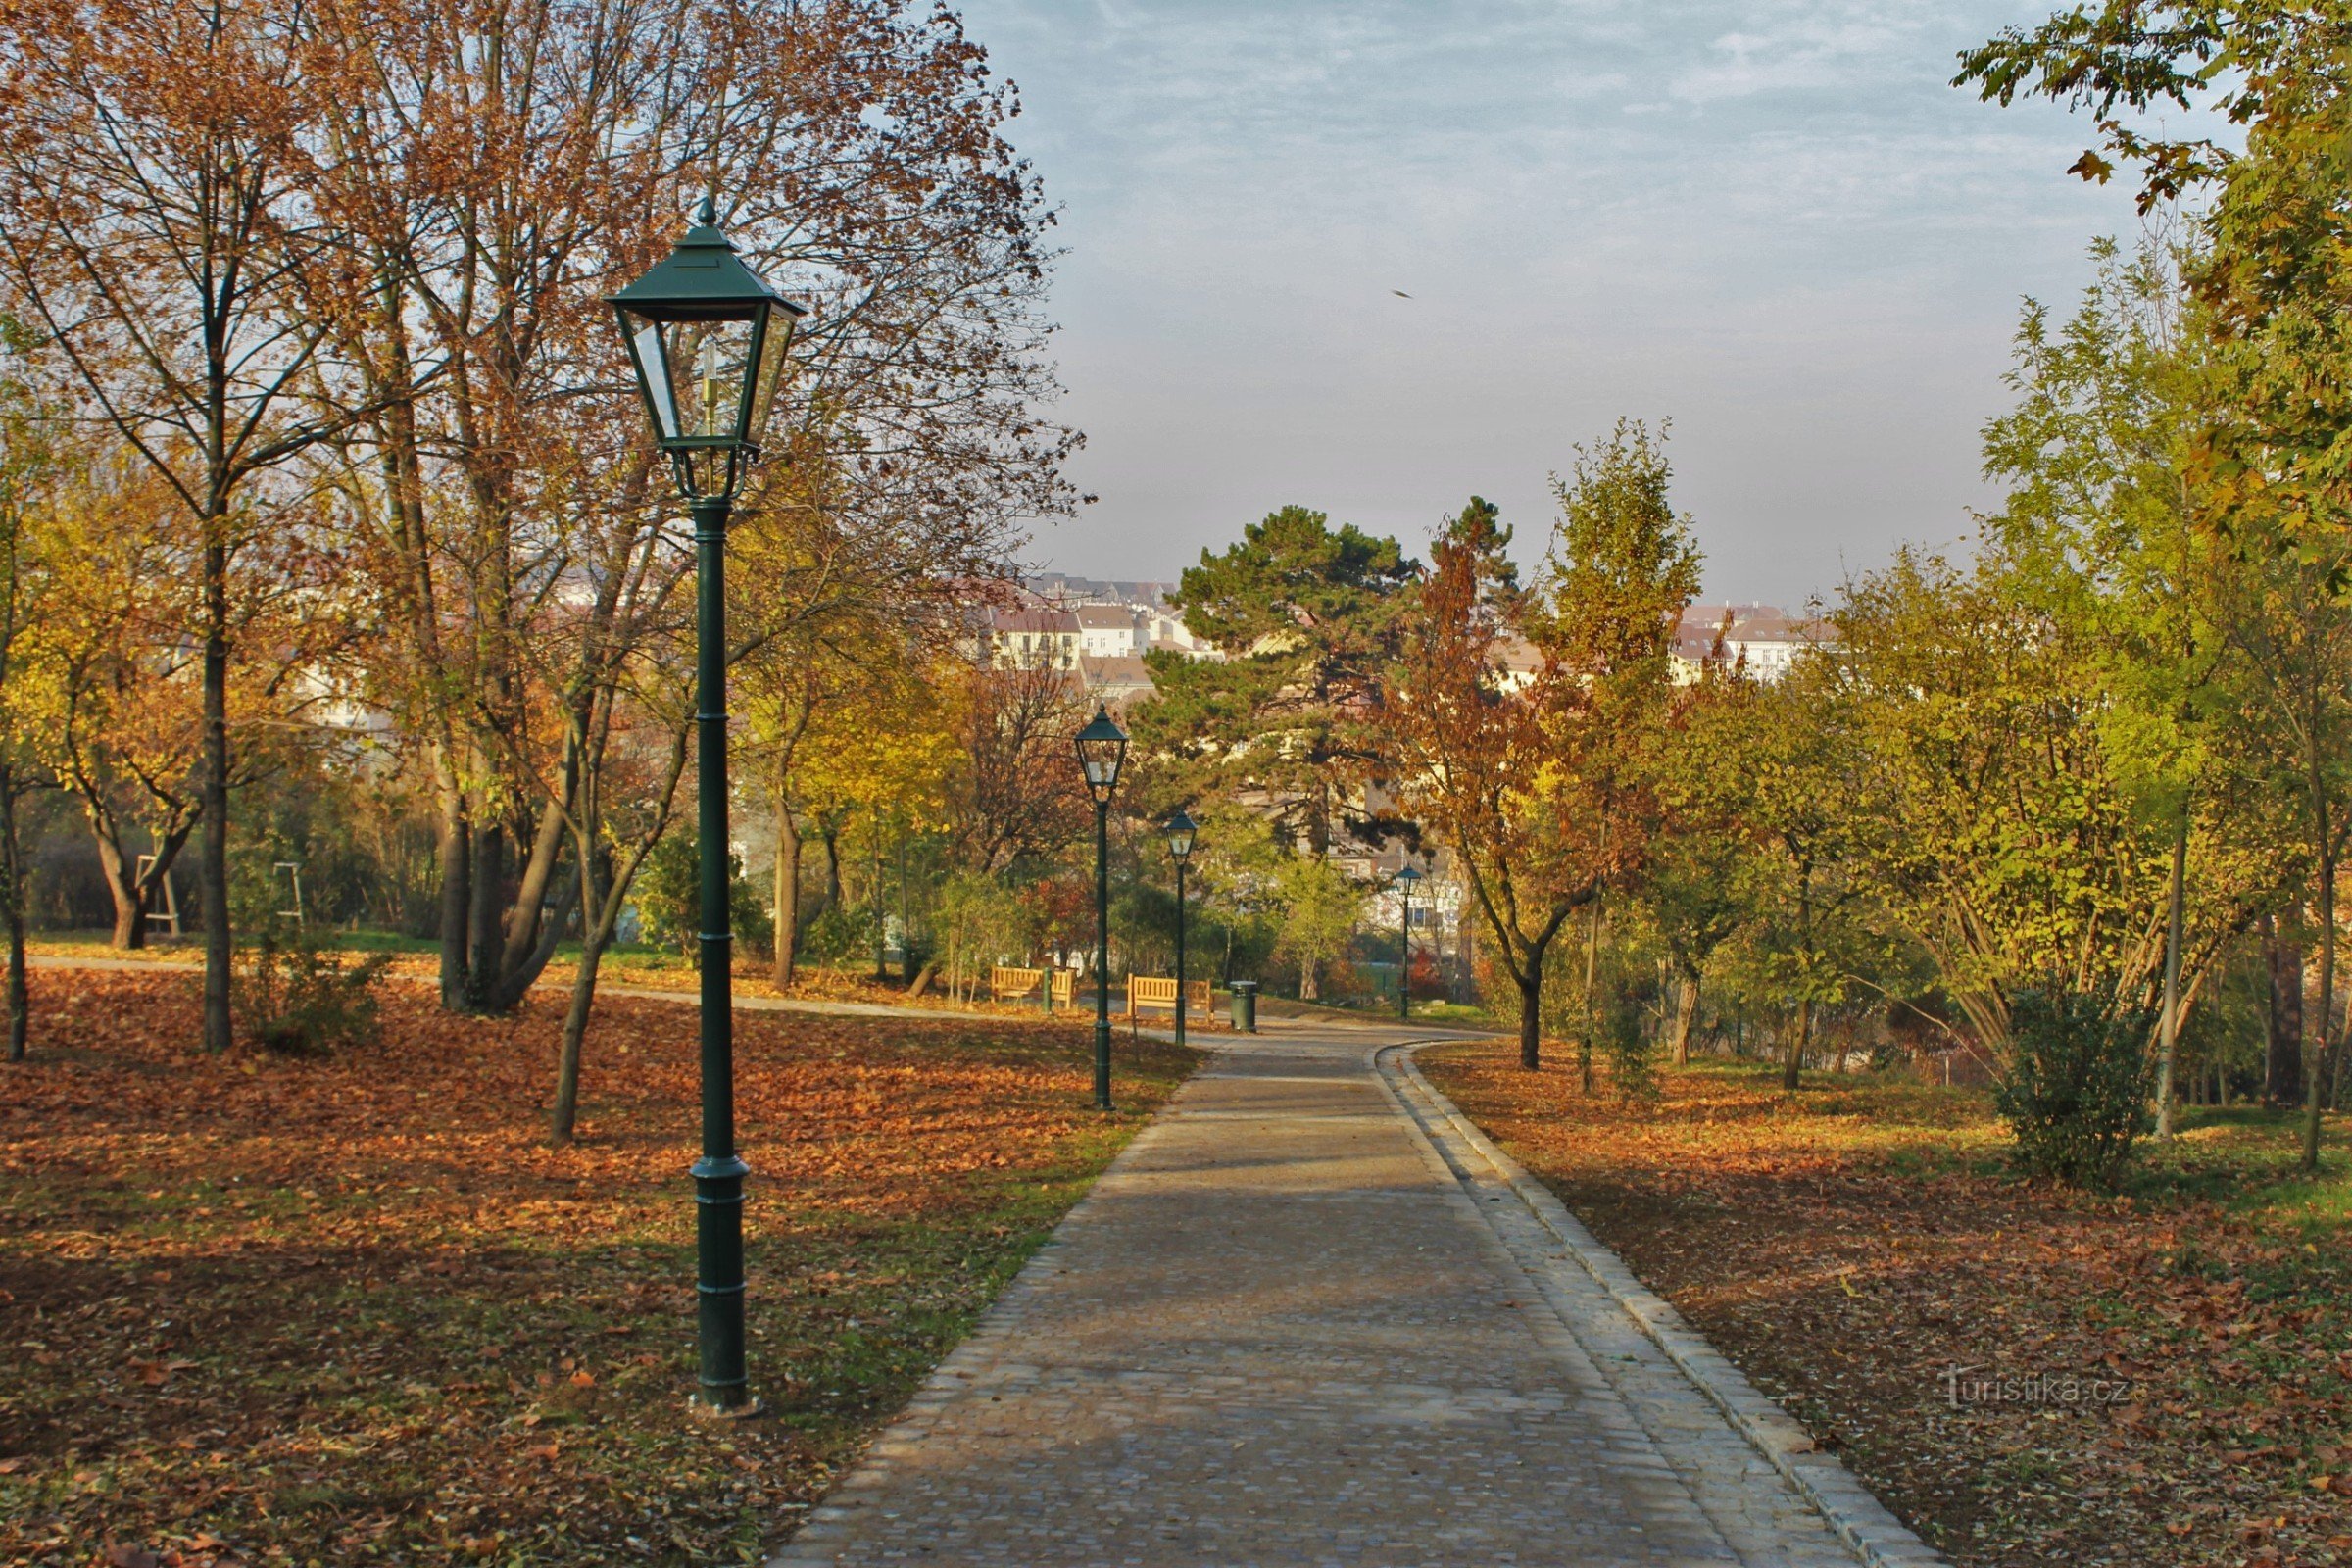 Brno-Park Špilberk - nördliche Zufahrtsstraße